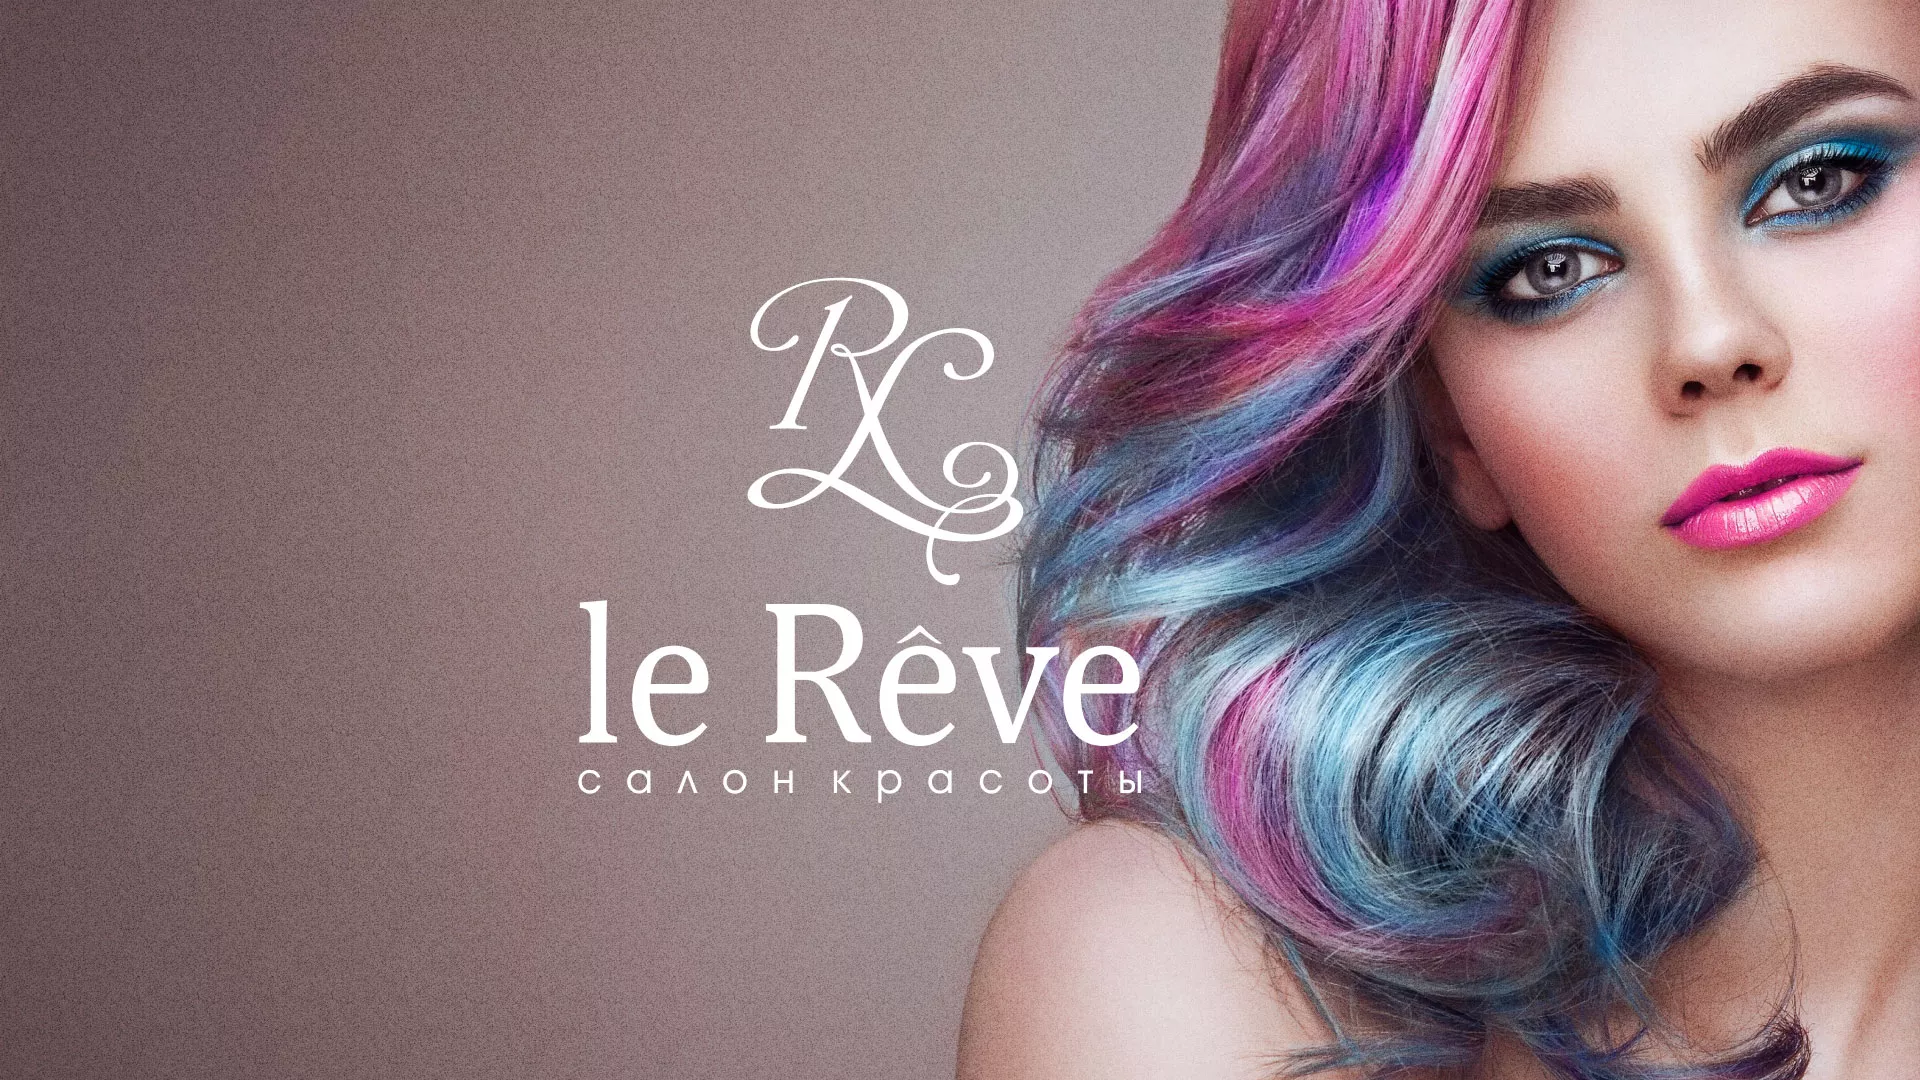 Создание сайта для салона красоты «Le Reve» в Усть-Илимске